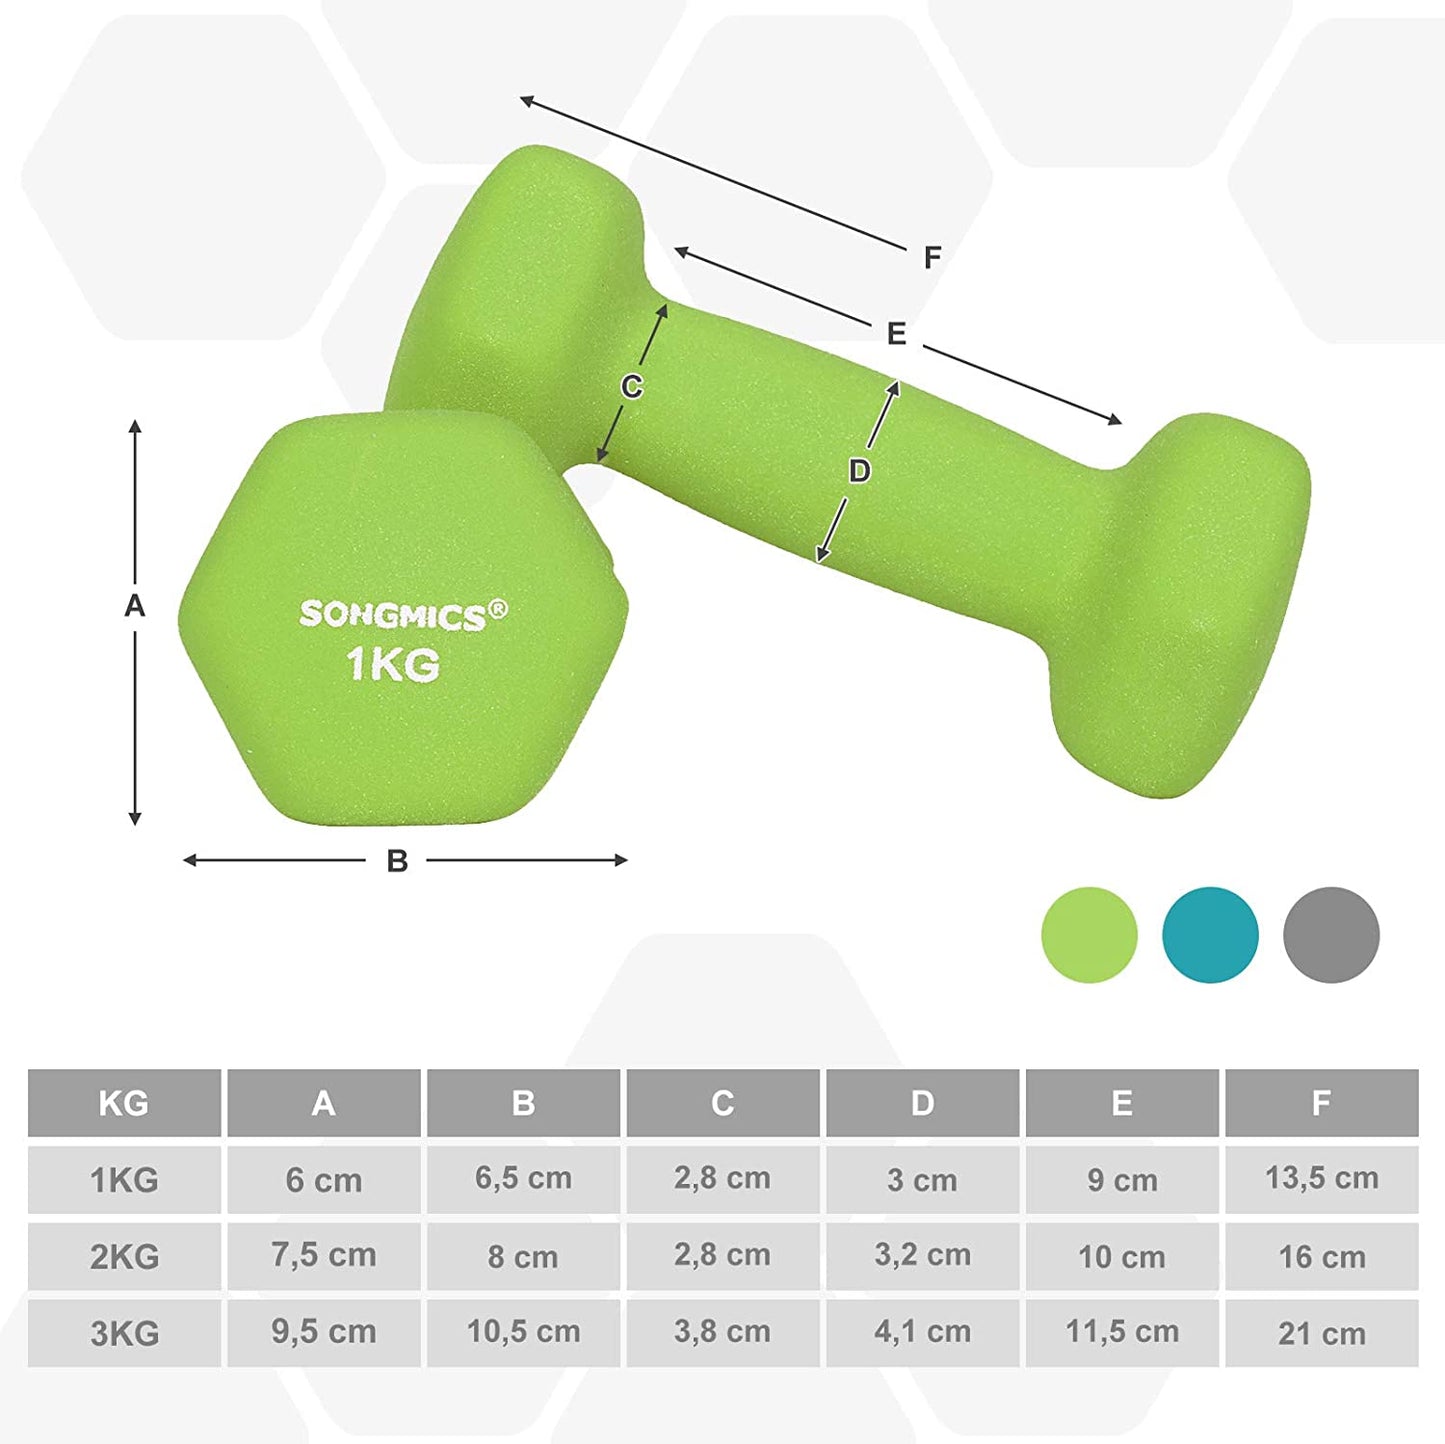 Nancy's Dumbells Set - Haltères - Hexagone - Support d'haltères - 1 kg - 2 kg - 3 kg - Musculation - Vert anis - Aigue-marine - Gris clair 